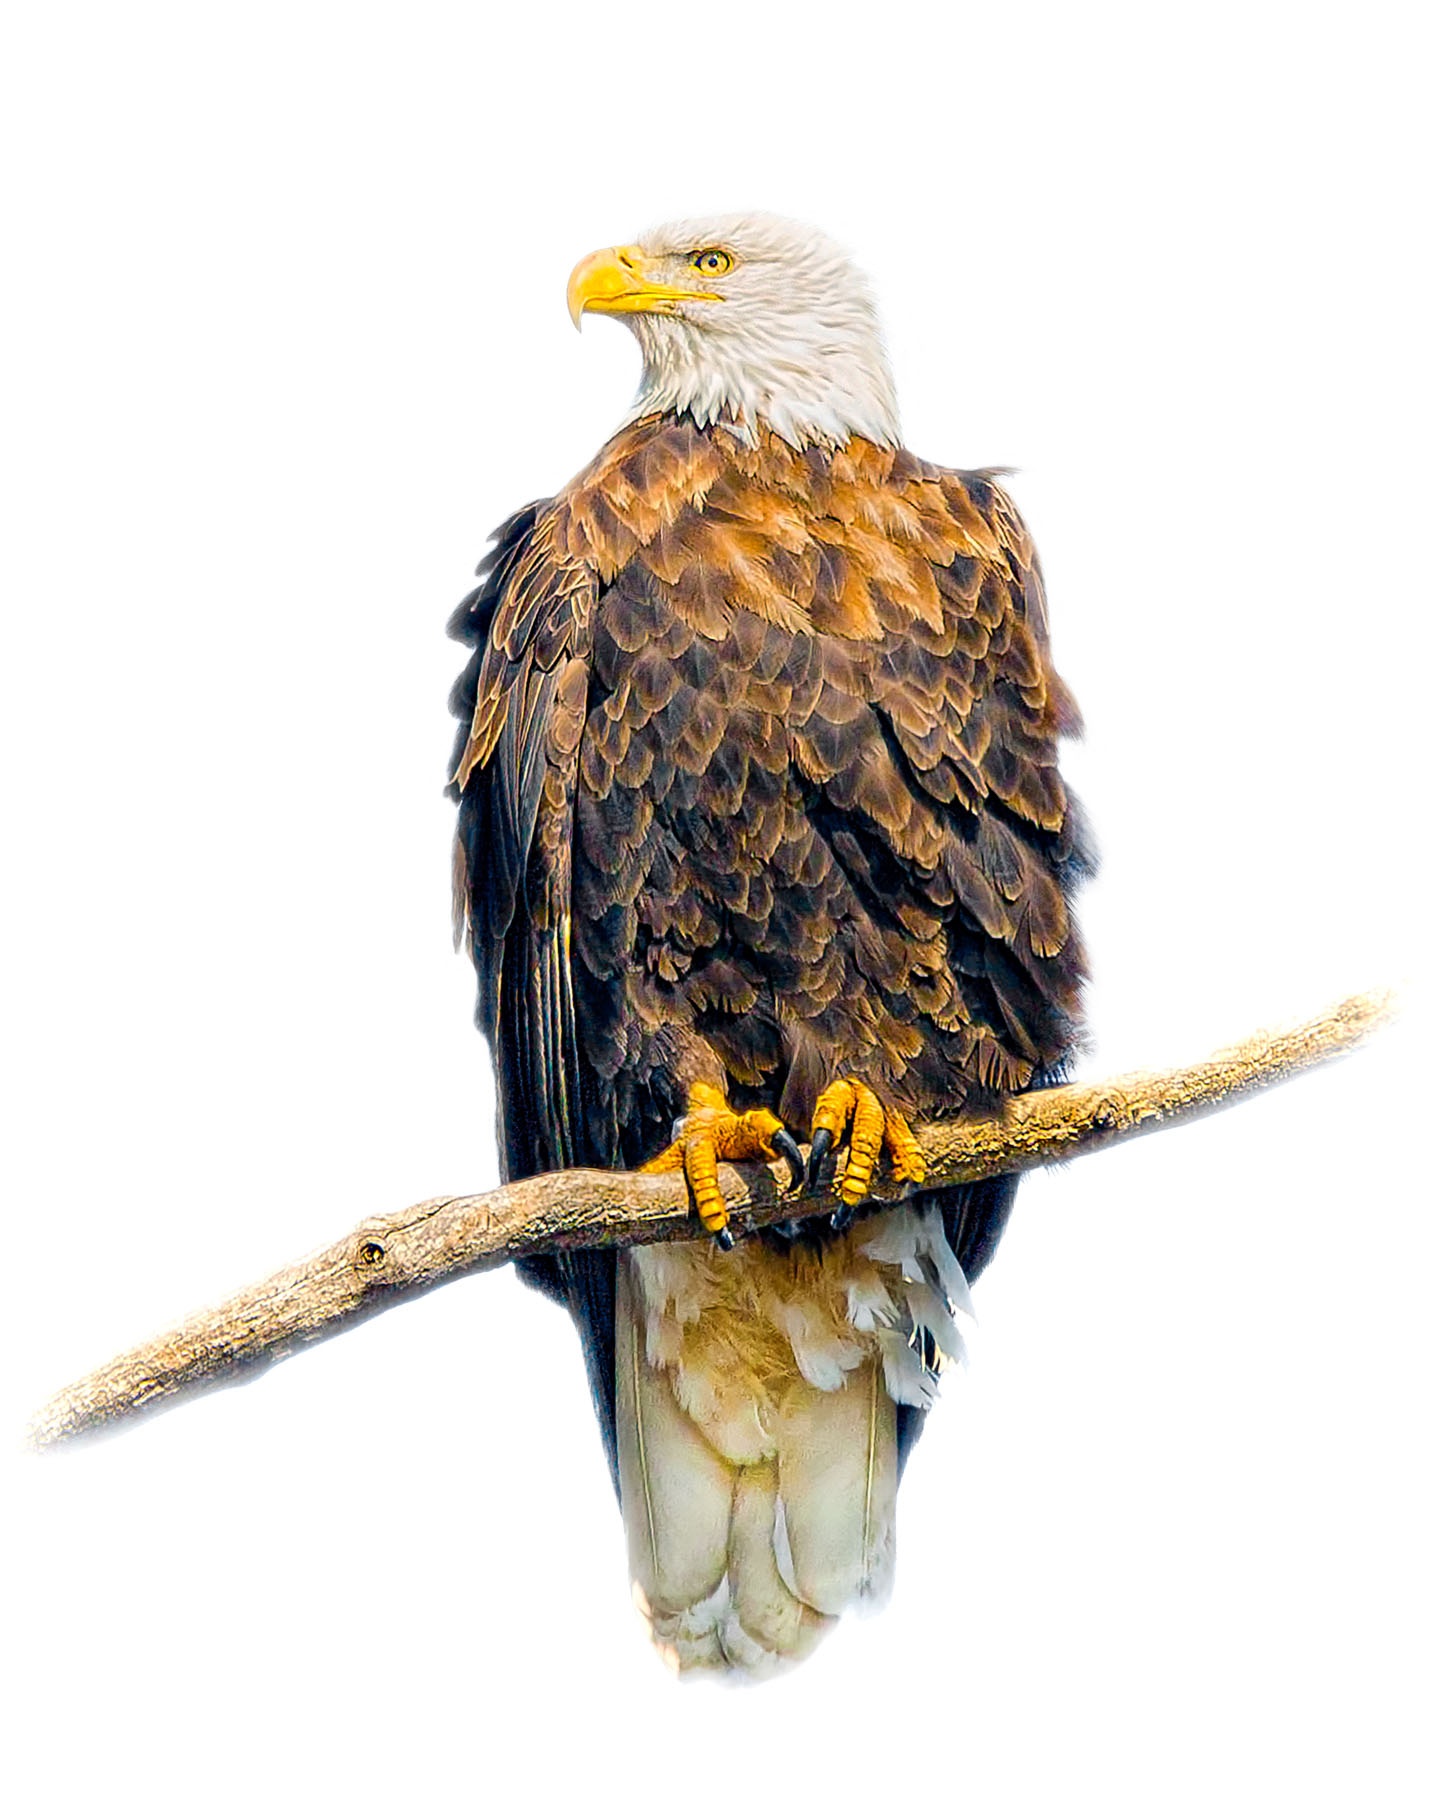 American Bald Eagle 1